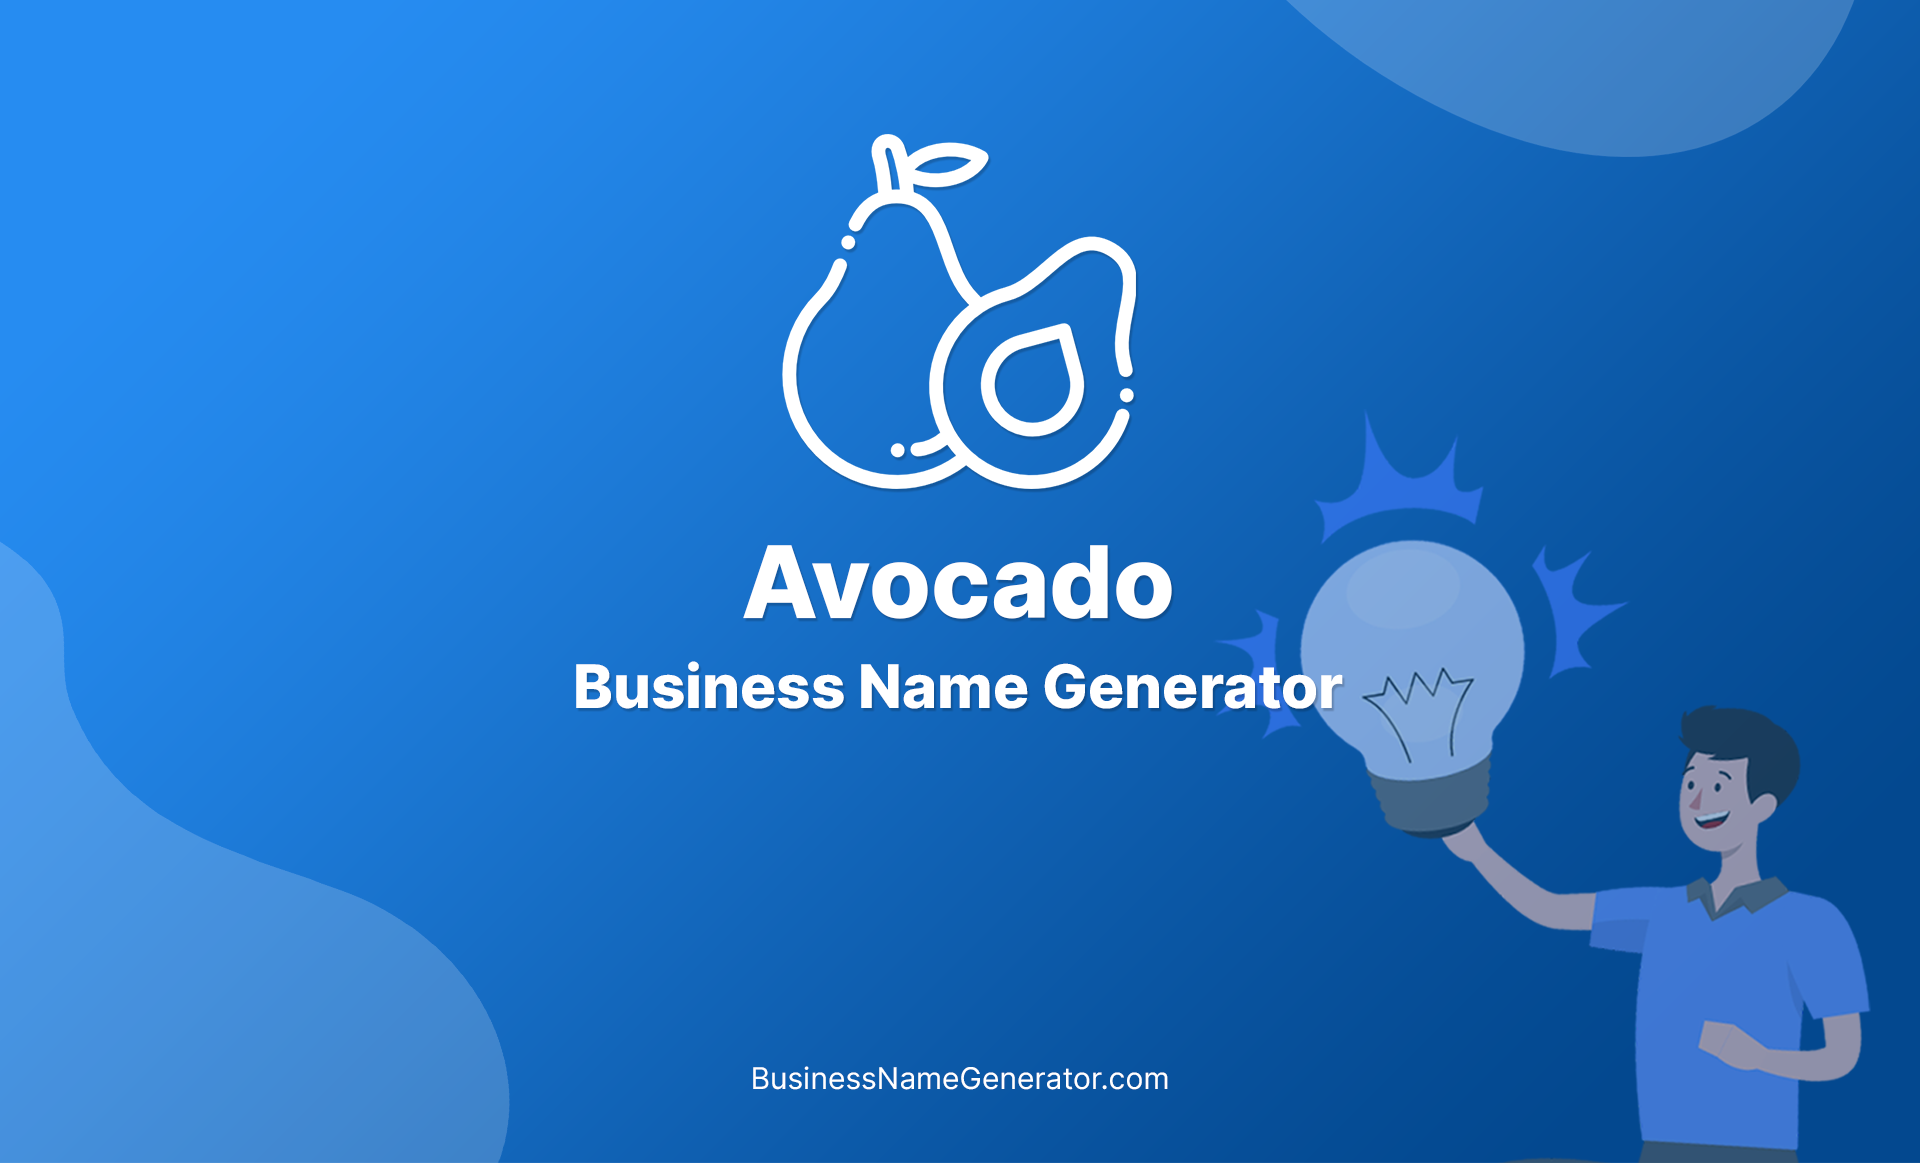 Avocado Business Name Generator